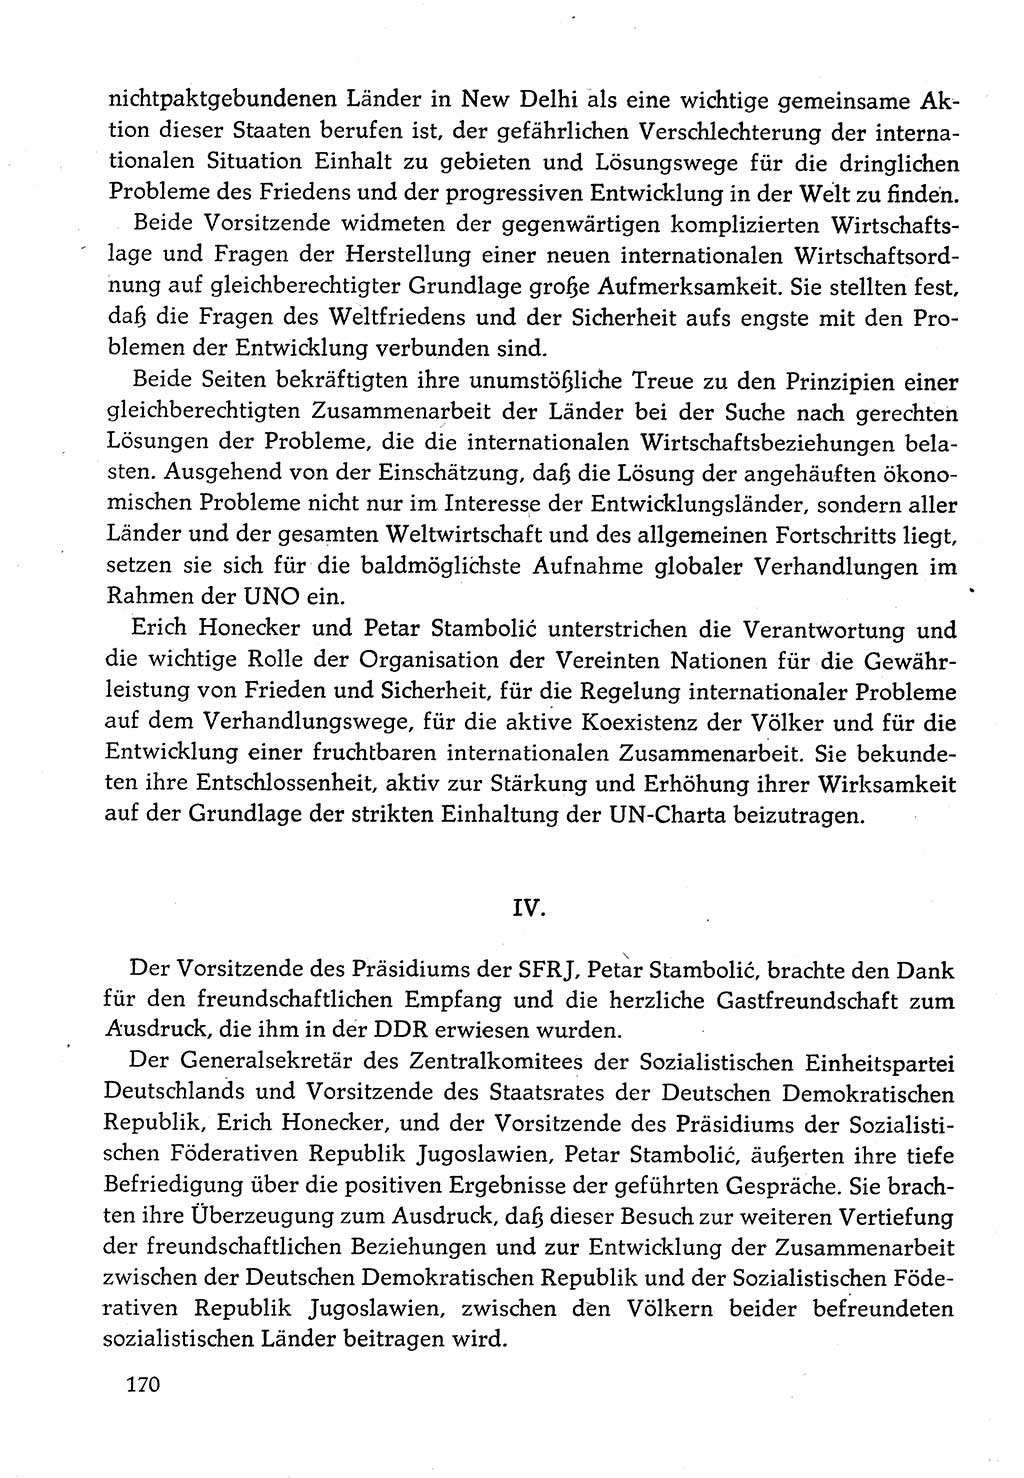 Dokumente der Sozialistischen Einheitspartei Deutschlands (SED) [Deutsche Demokratische Republik (DDR)] 1982-1983, Seite 170 (Dok. SED DDR 1982-1983, S. 170)